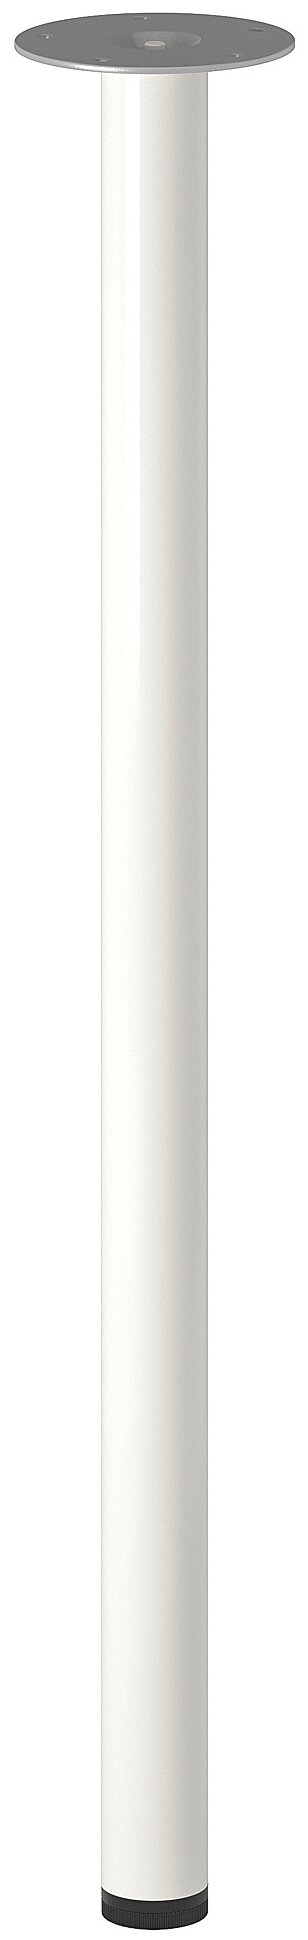 Ножка мебельная ИКЕА АДИЛЬС, D: 4 см, белый